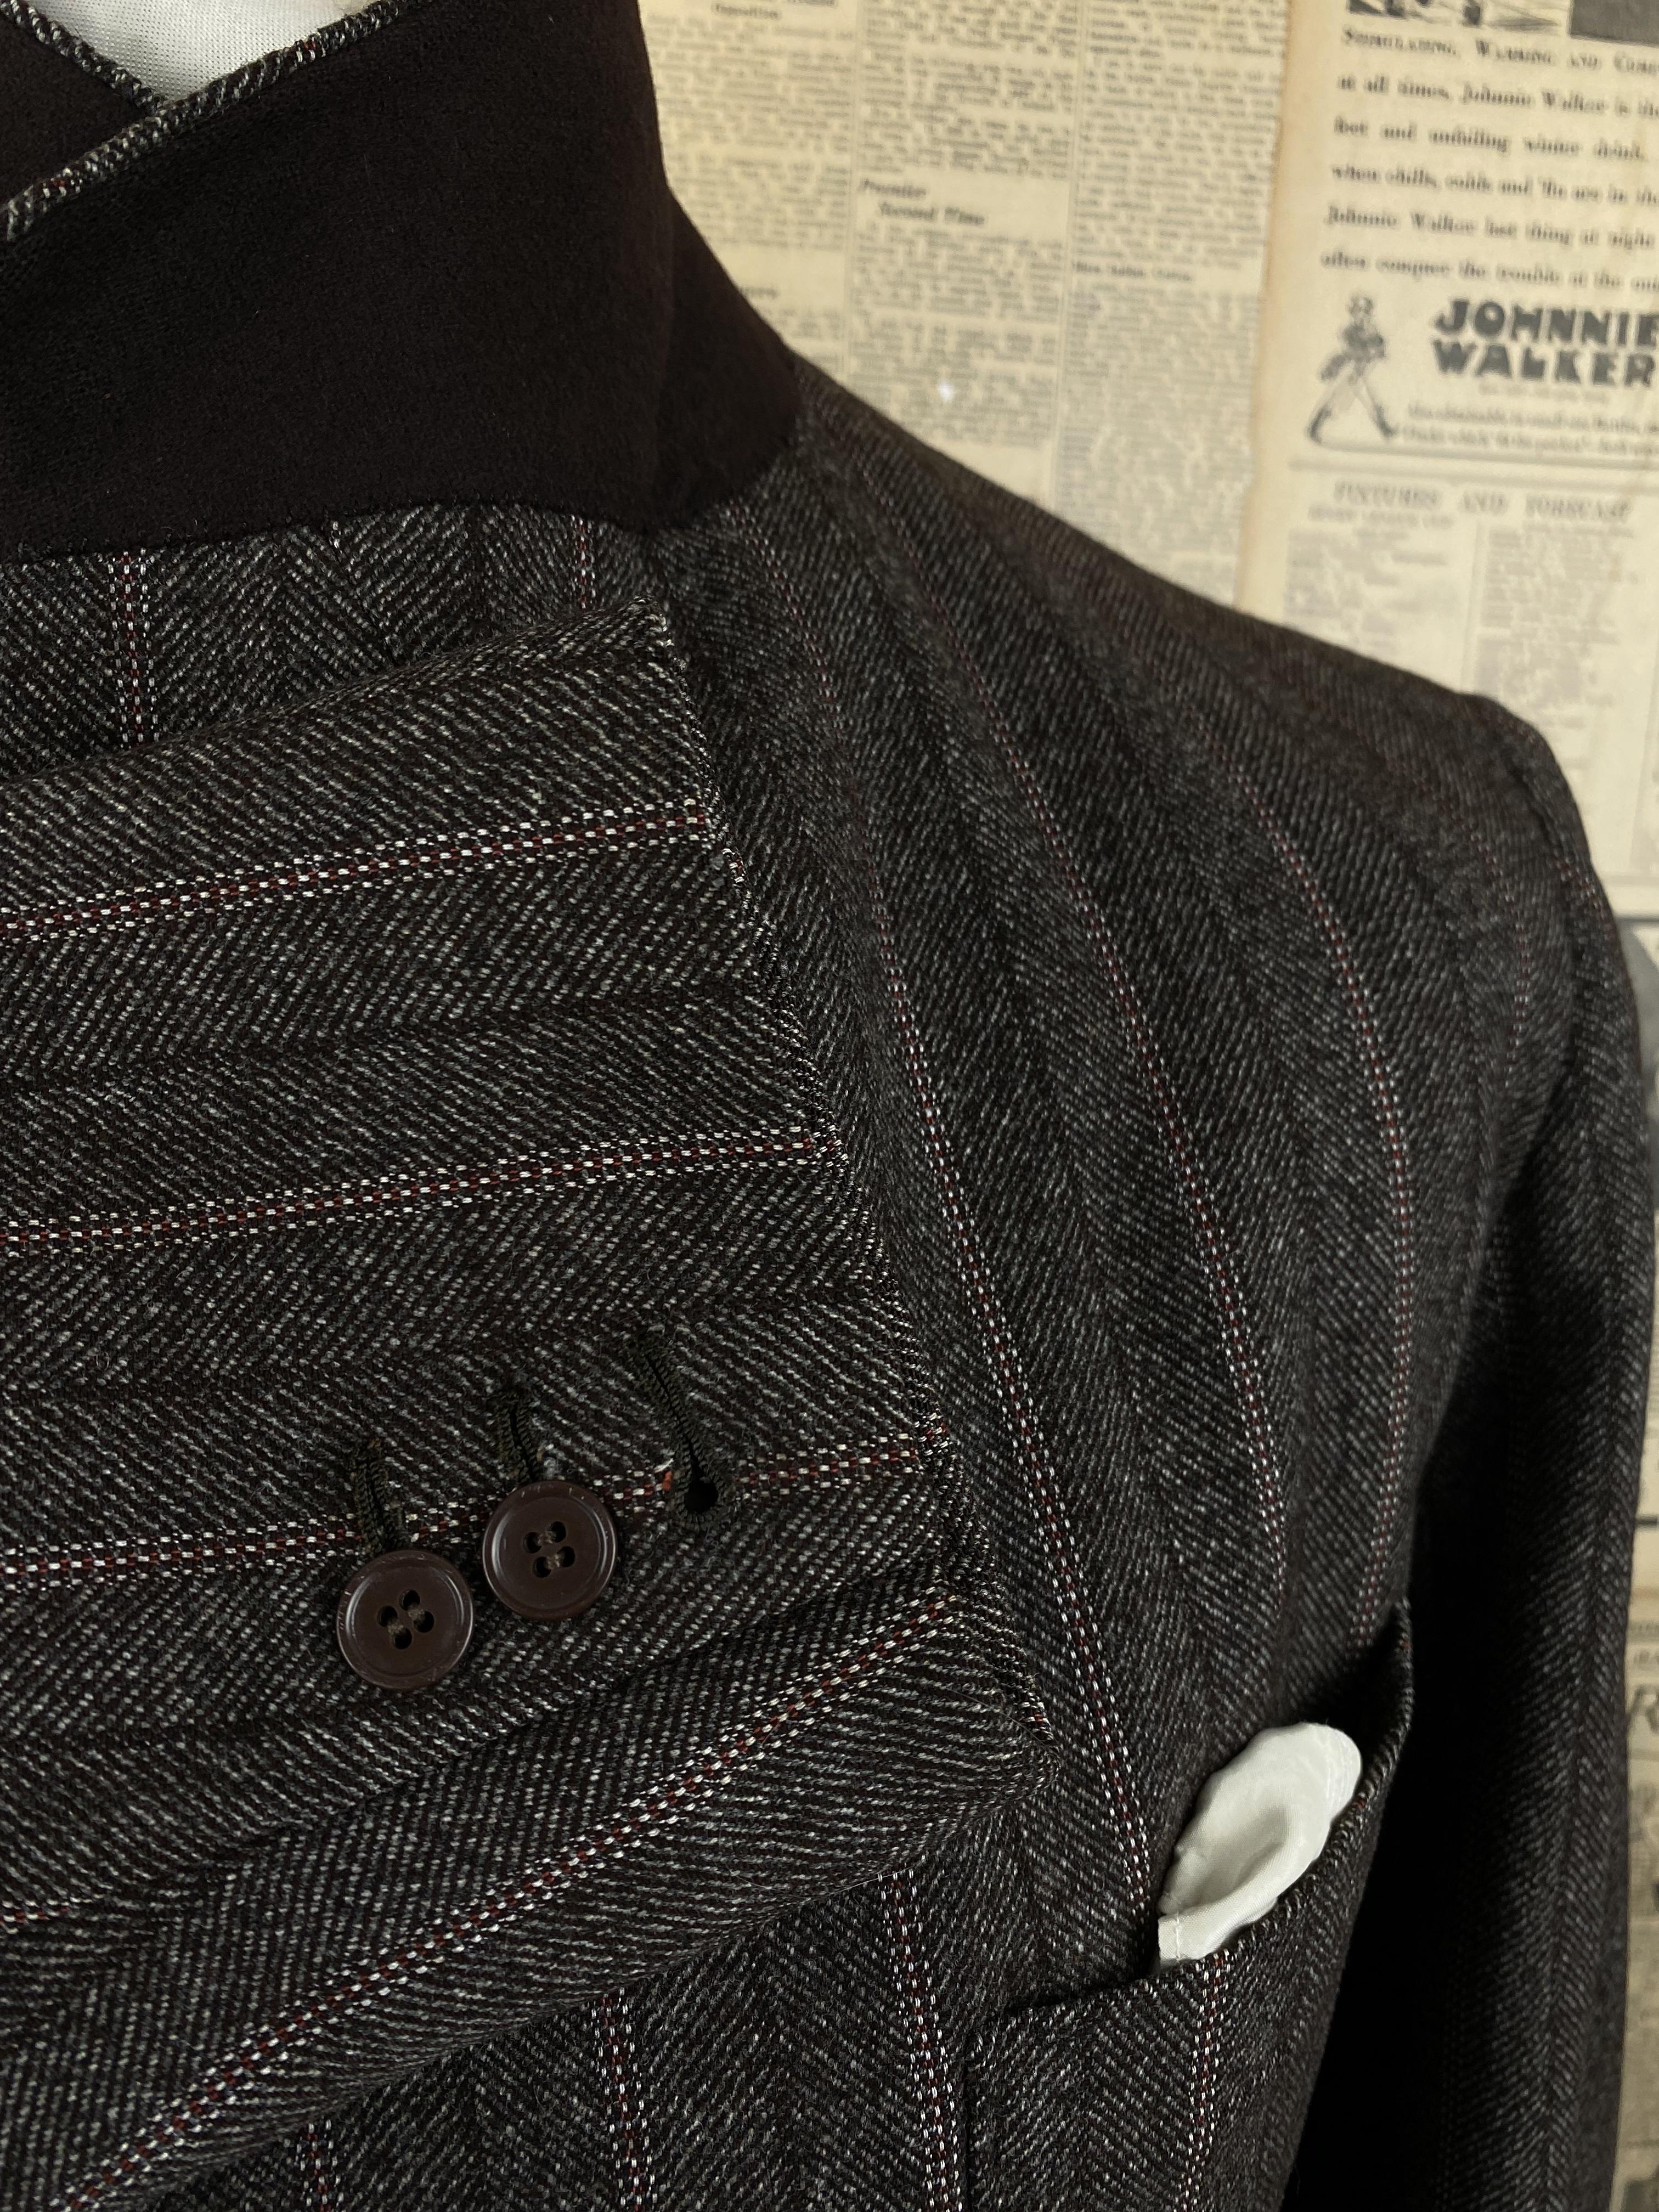 Vintage bespoke Edwardian 1920's tweed jacket and waistcoat size 40 42